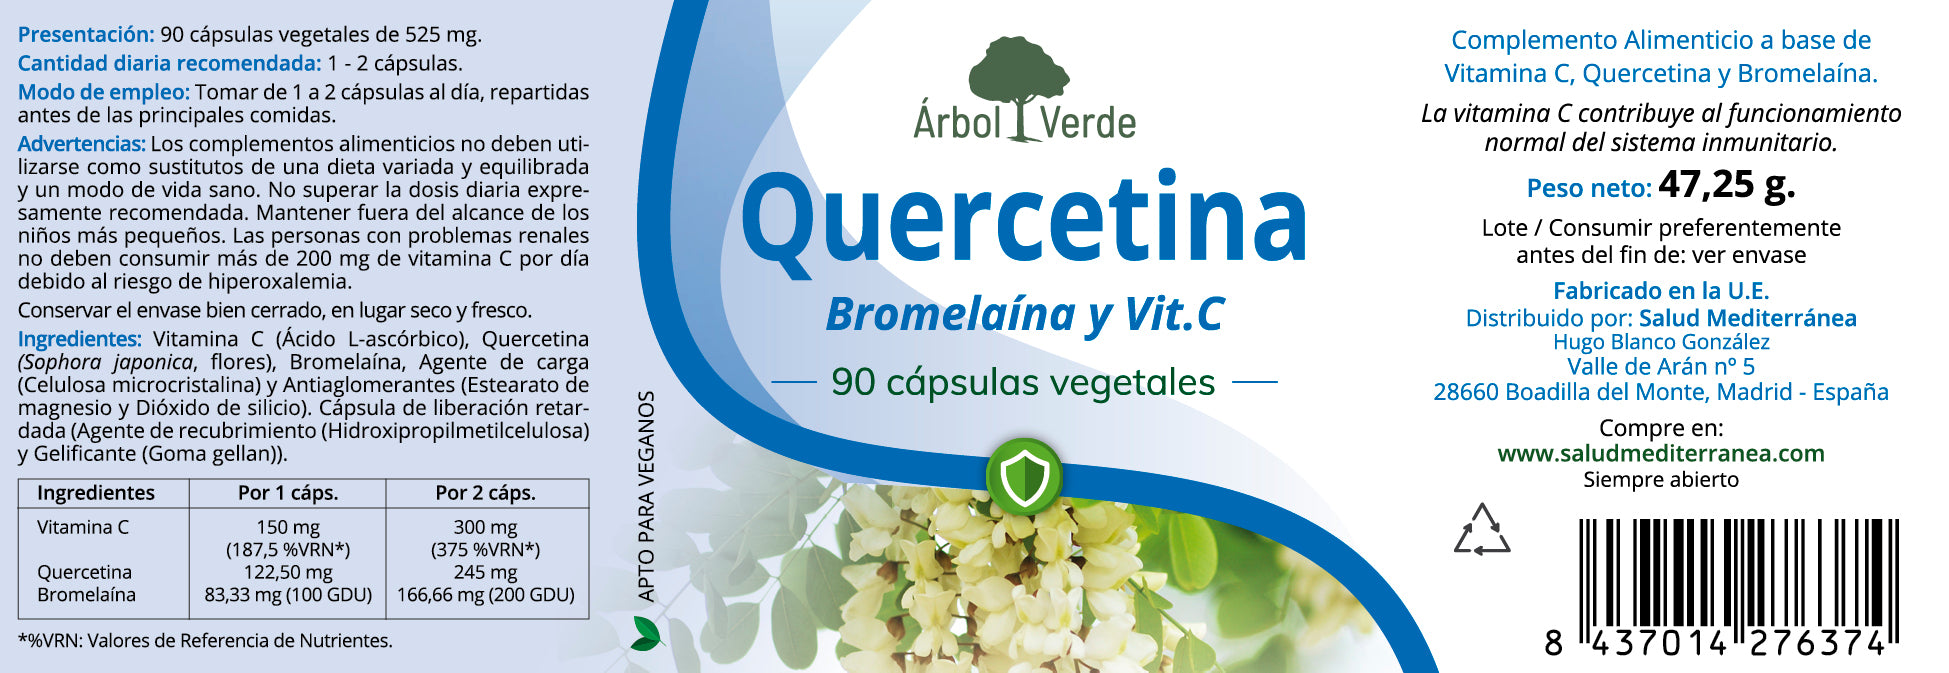 Etiqueta Quercetina, Bromelaína y Vitamina C - 90 Cápsulas. Árbol Verde. Herbolario Salud Mediterranea